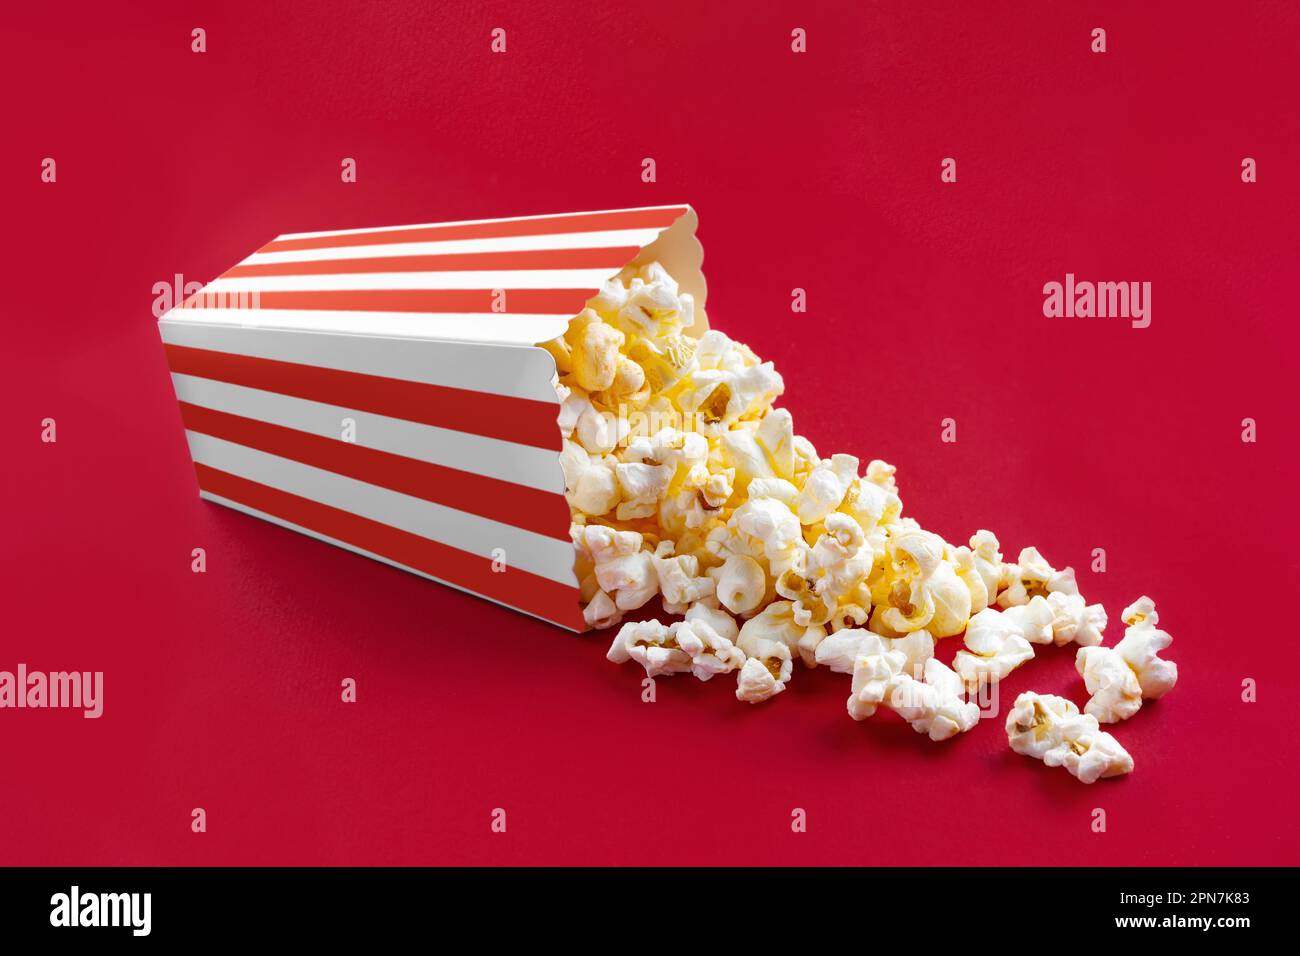 Gustoso popcorn al formaggio che cade da un secchio di cartone a strisce rosse, isolato su sfondo rosso. Dispersione di grani di popcorn. Film, cinema e intrattenimento Foto Stock